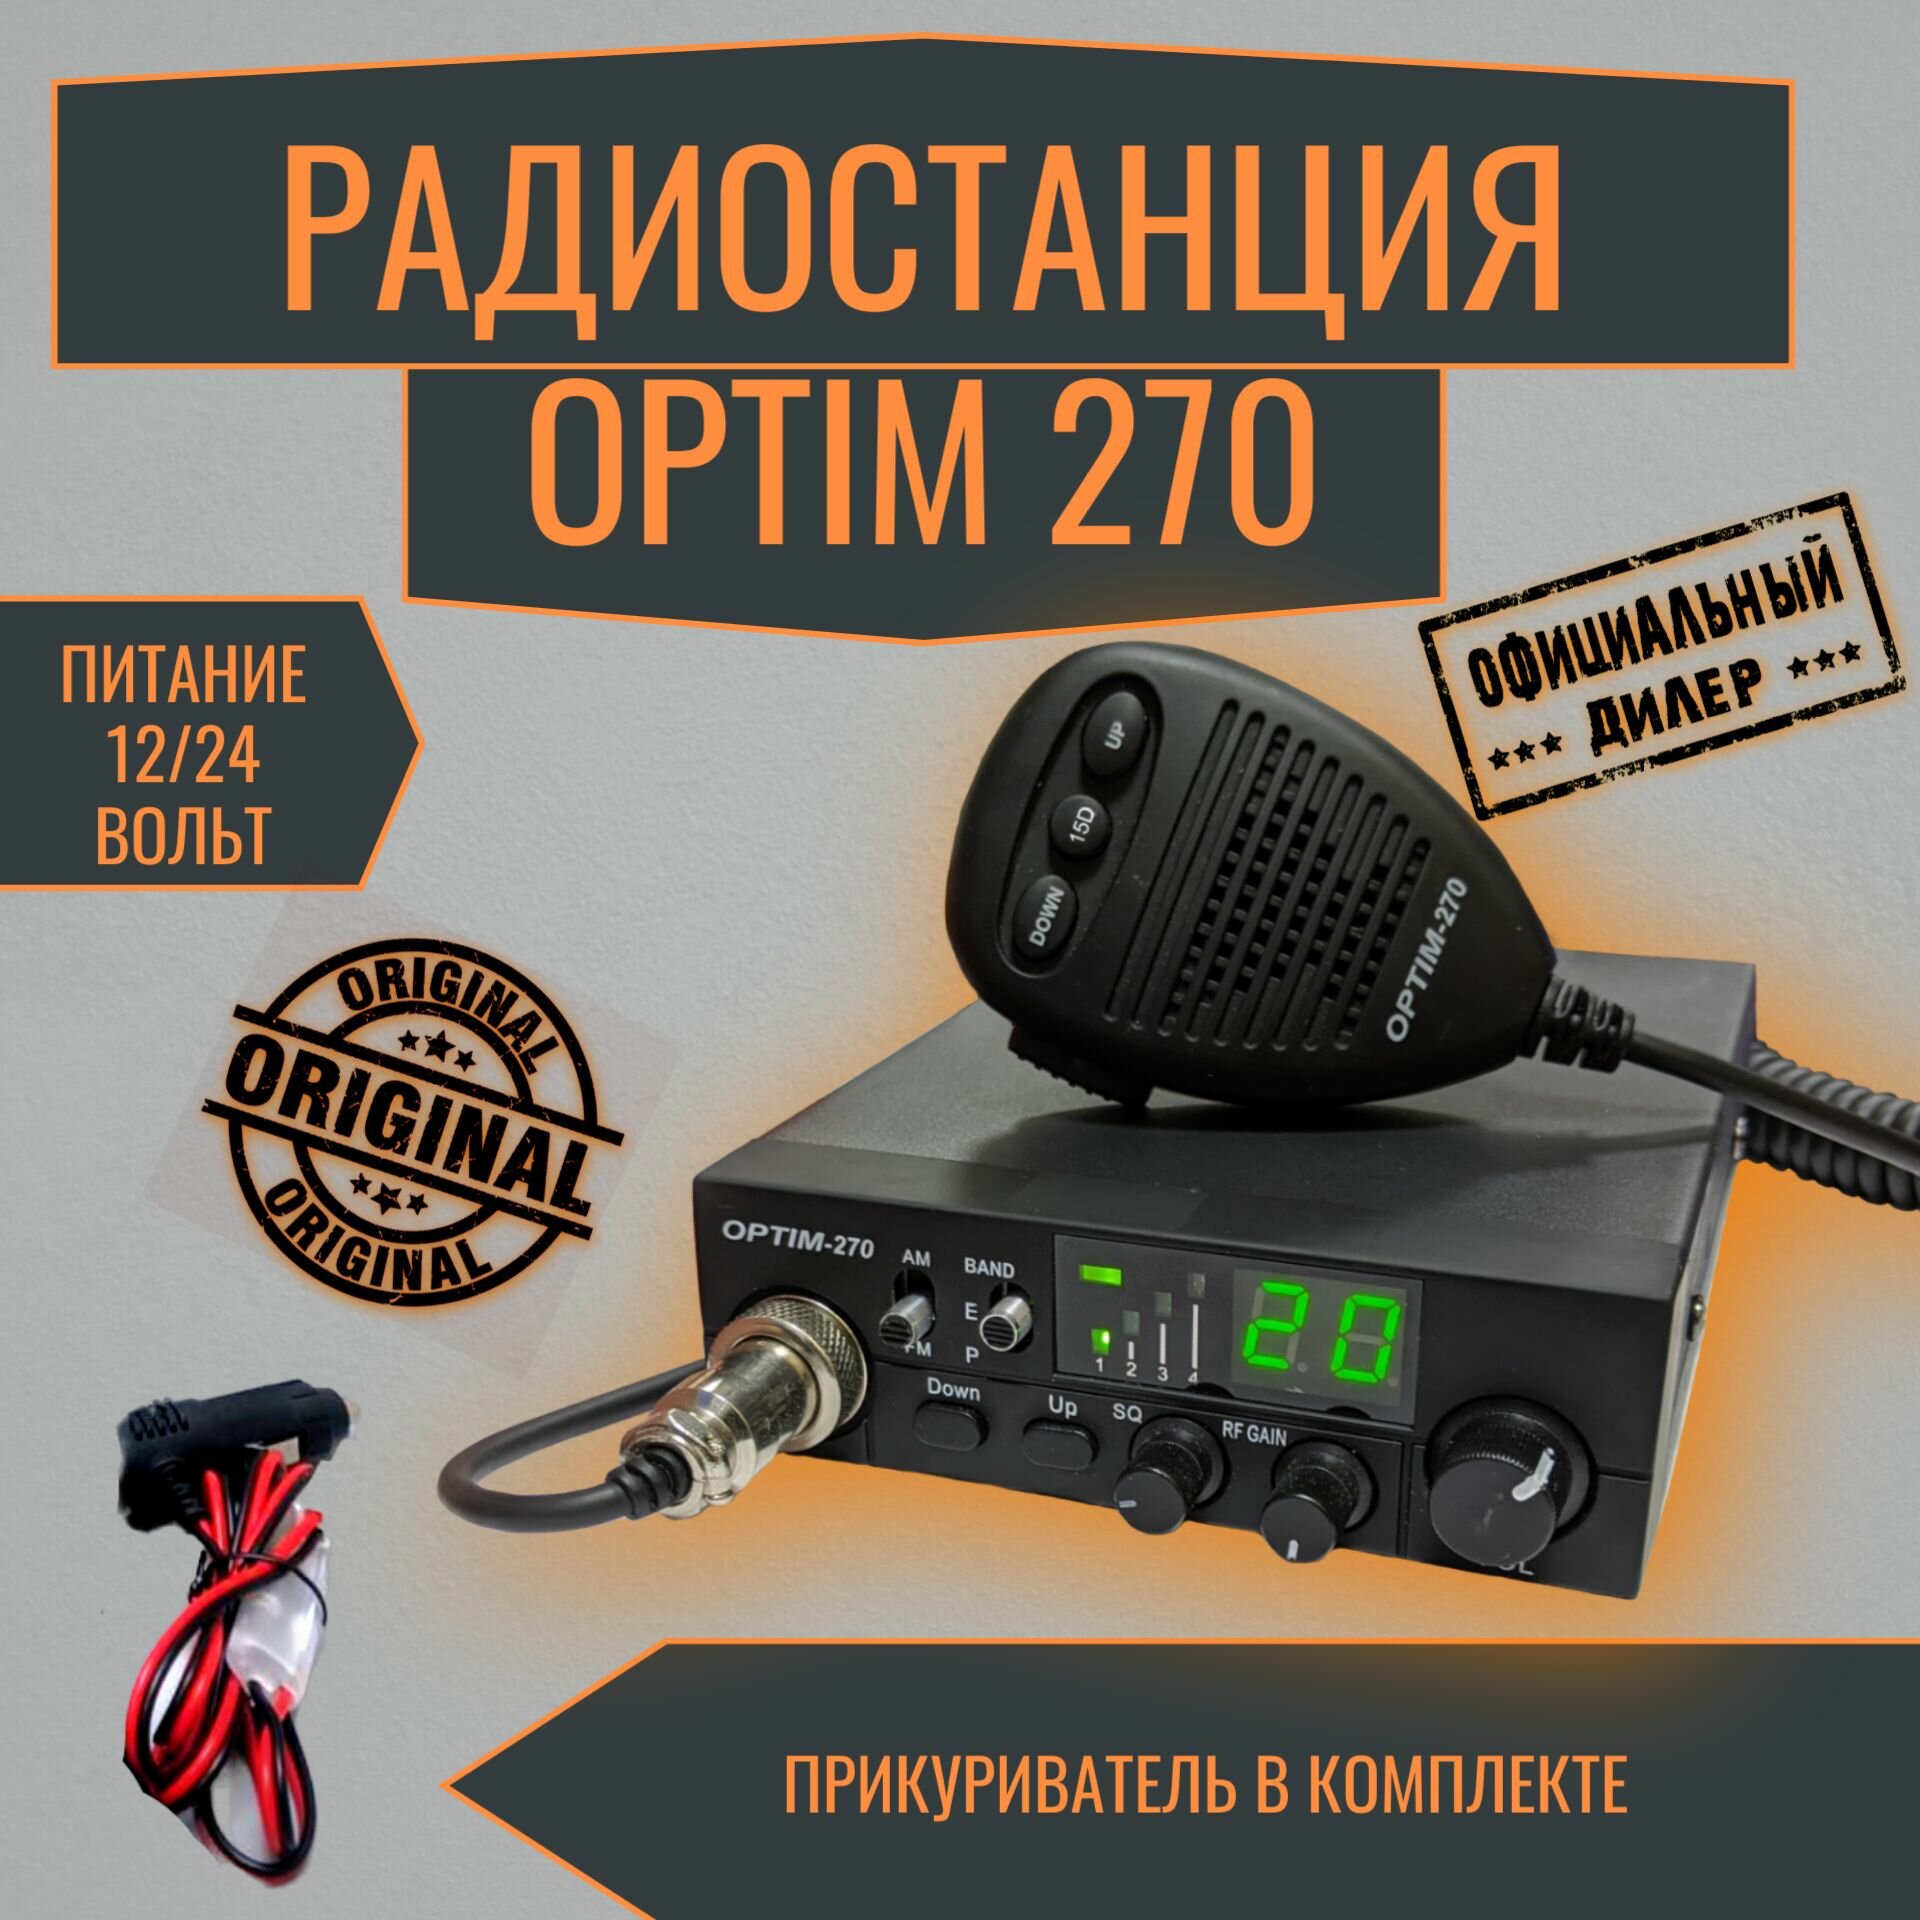 Радиостанция автомобильная Optim 270 с прикуривателем в комплекте